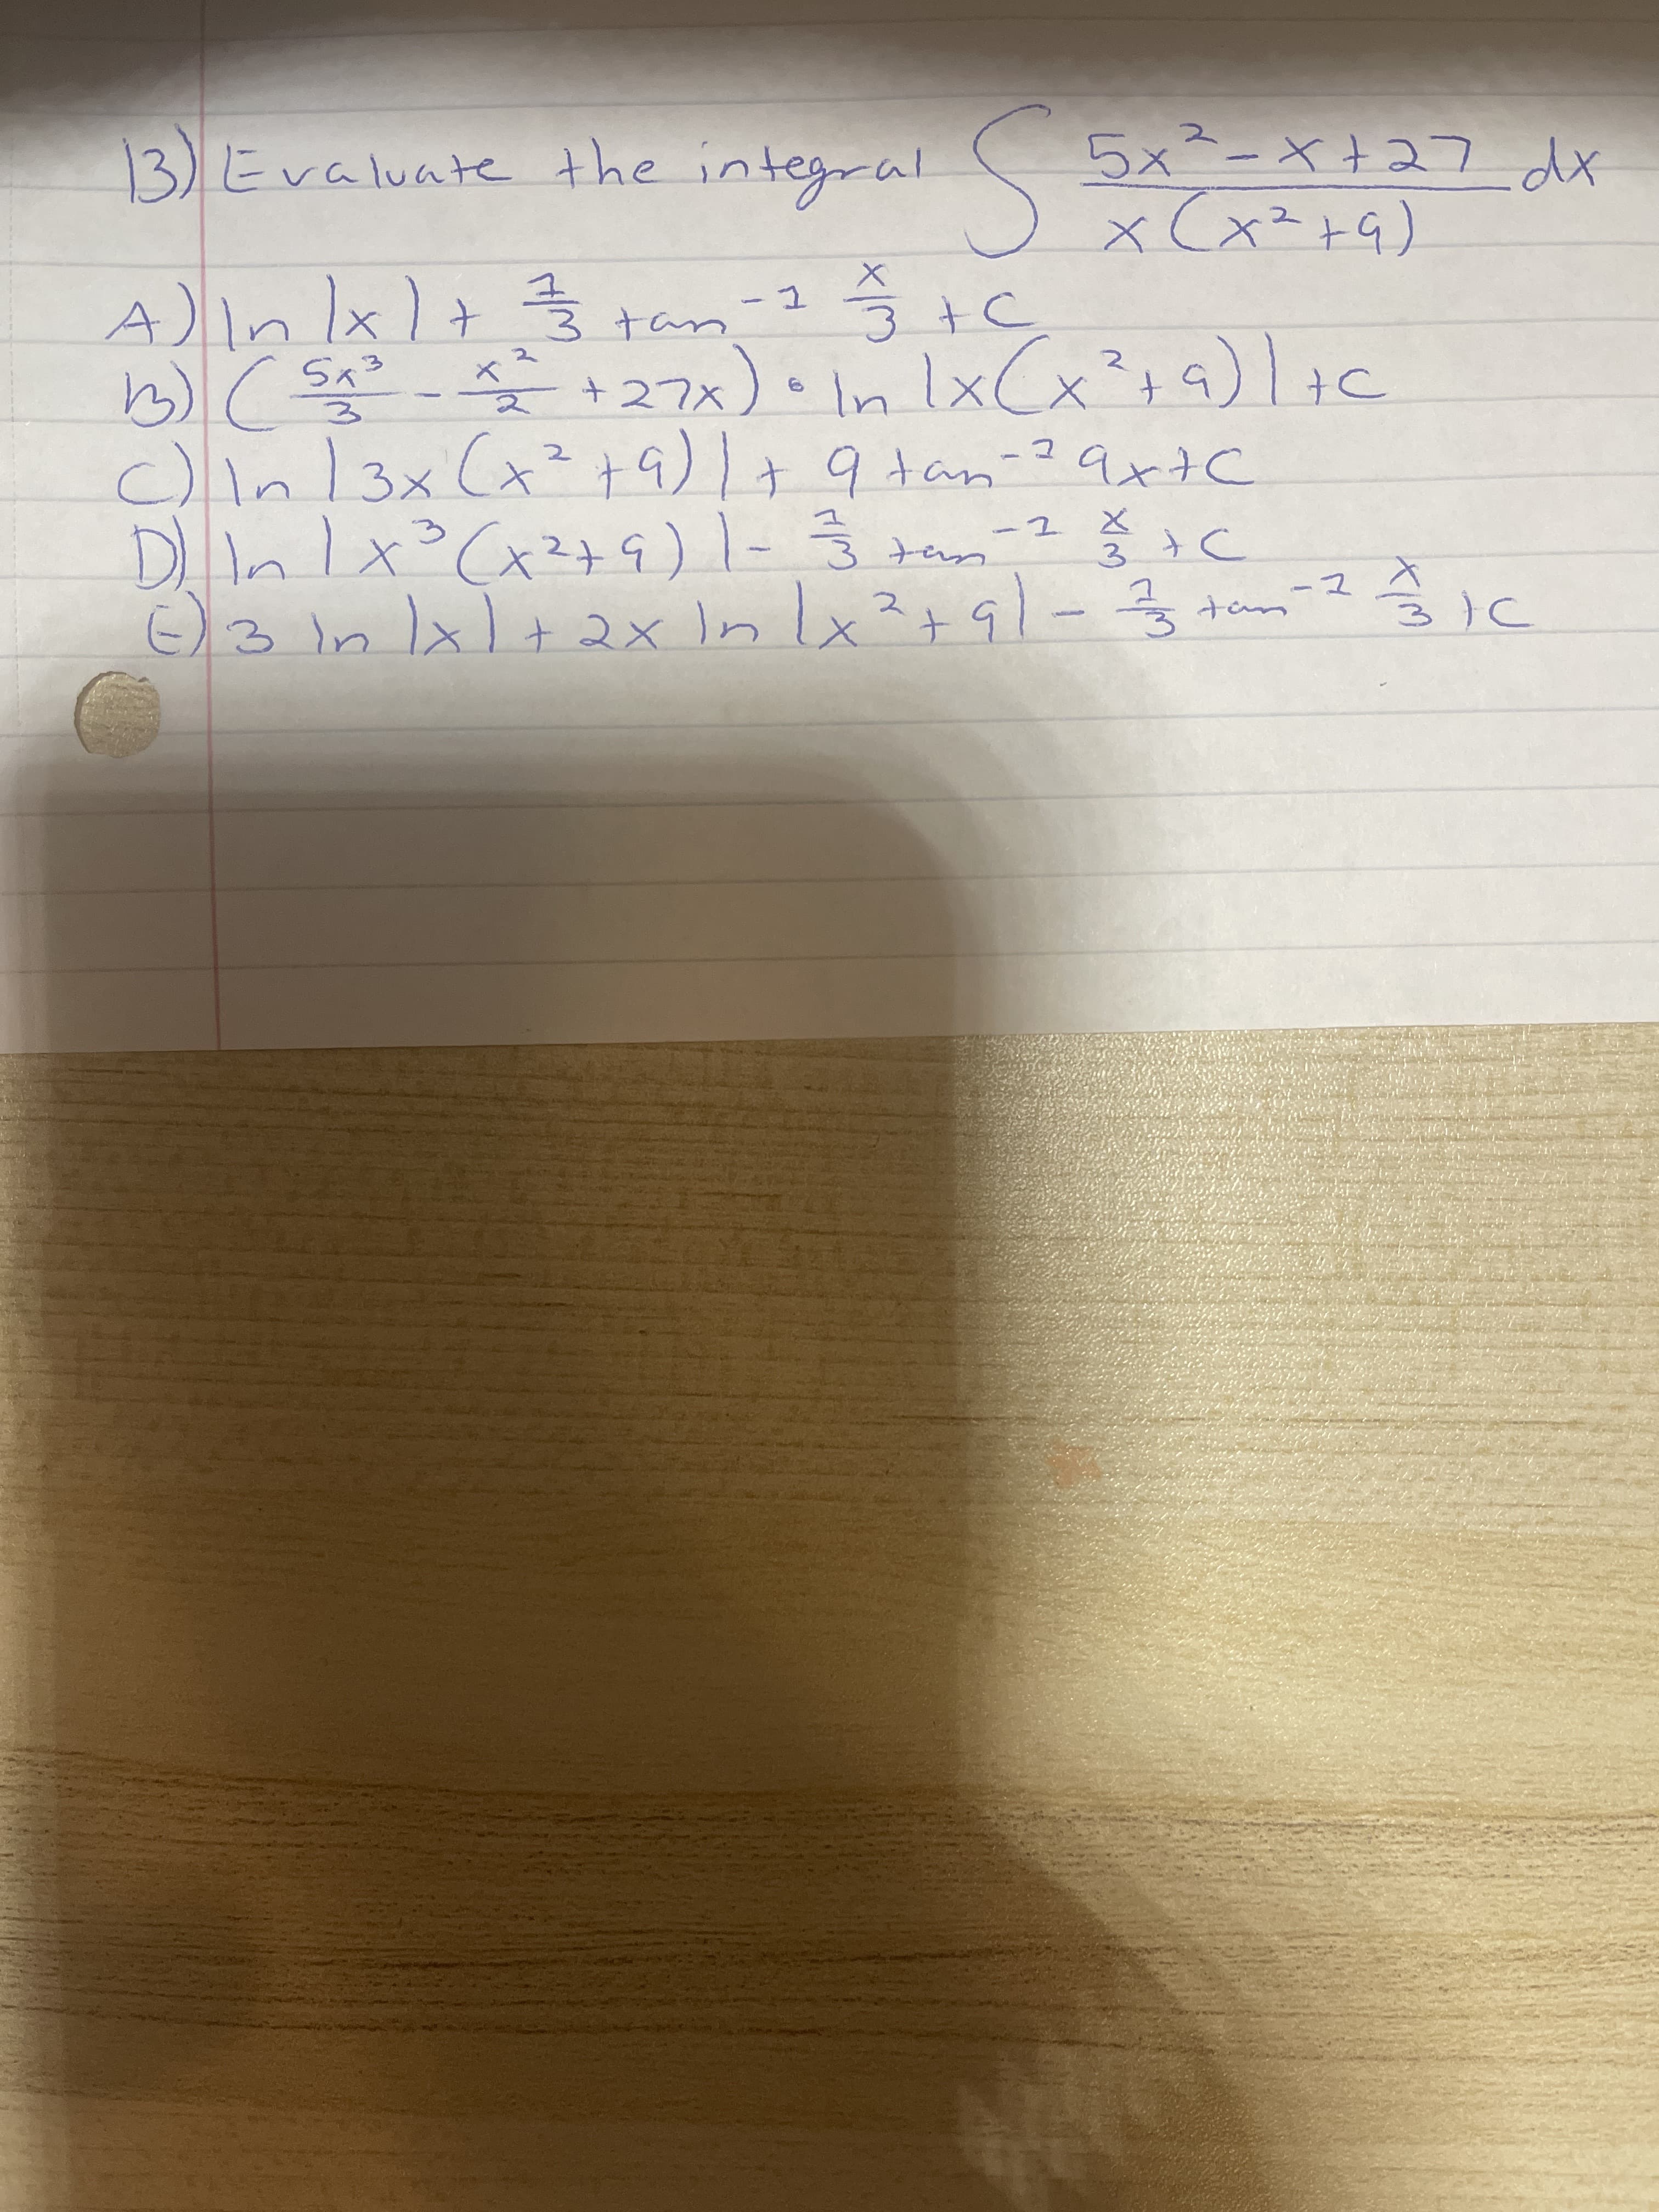 つ1E
とこ-
E)3 In lx)+ 2x In lx?+91-3
115tでx)。x
つtさbe-notb +1(6tcx)×1つ
つt E
て-
b)(- 27x)、1nlxCx?ょ5)c
A)in lx)+ }
In Ix Cx²;
つtE e-
×して+
エー
S ウ-6atu
valuate the
13)E
Xp Letx-,XG
て
